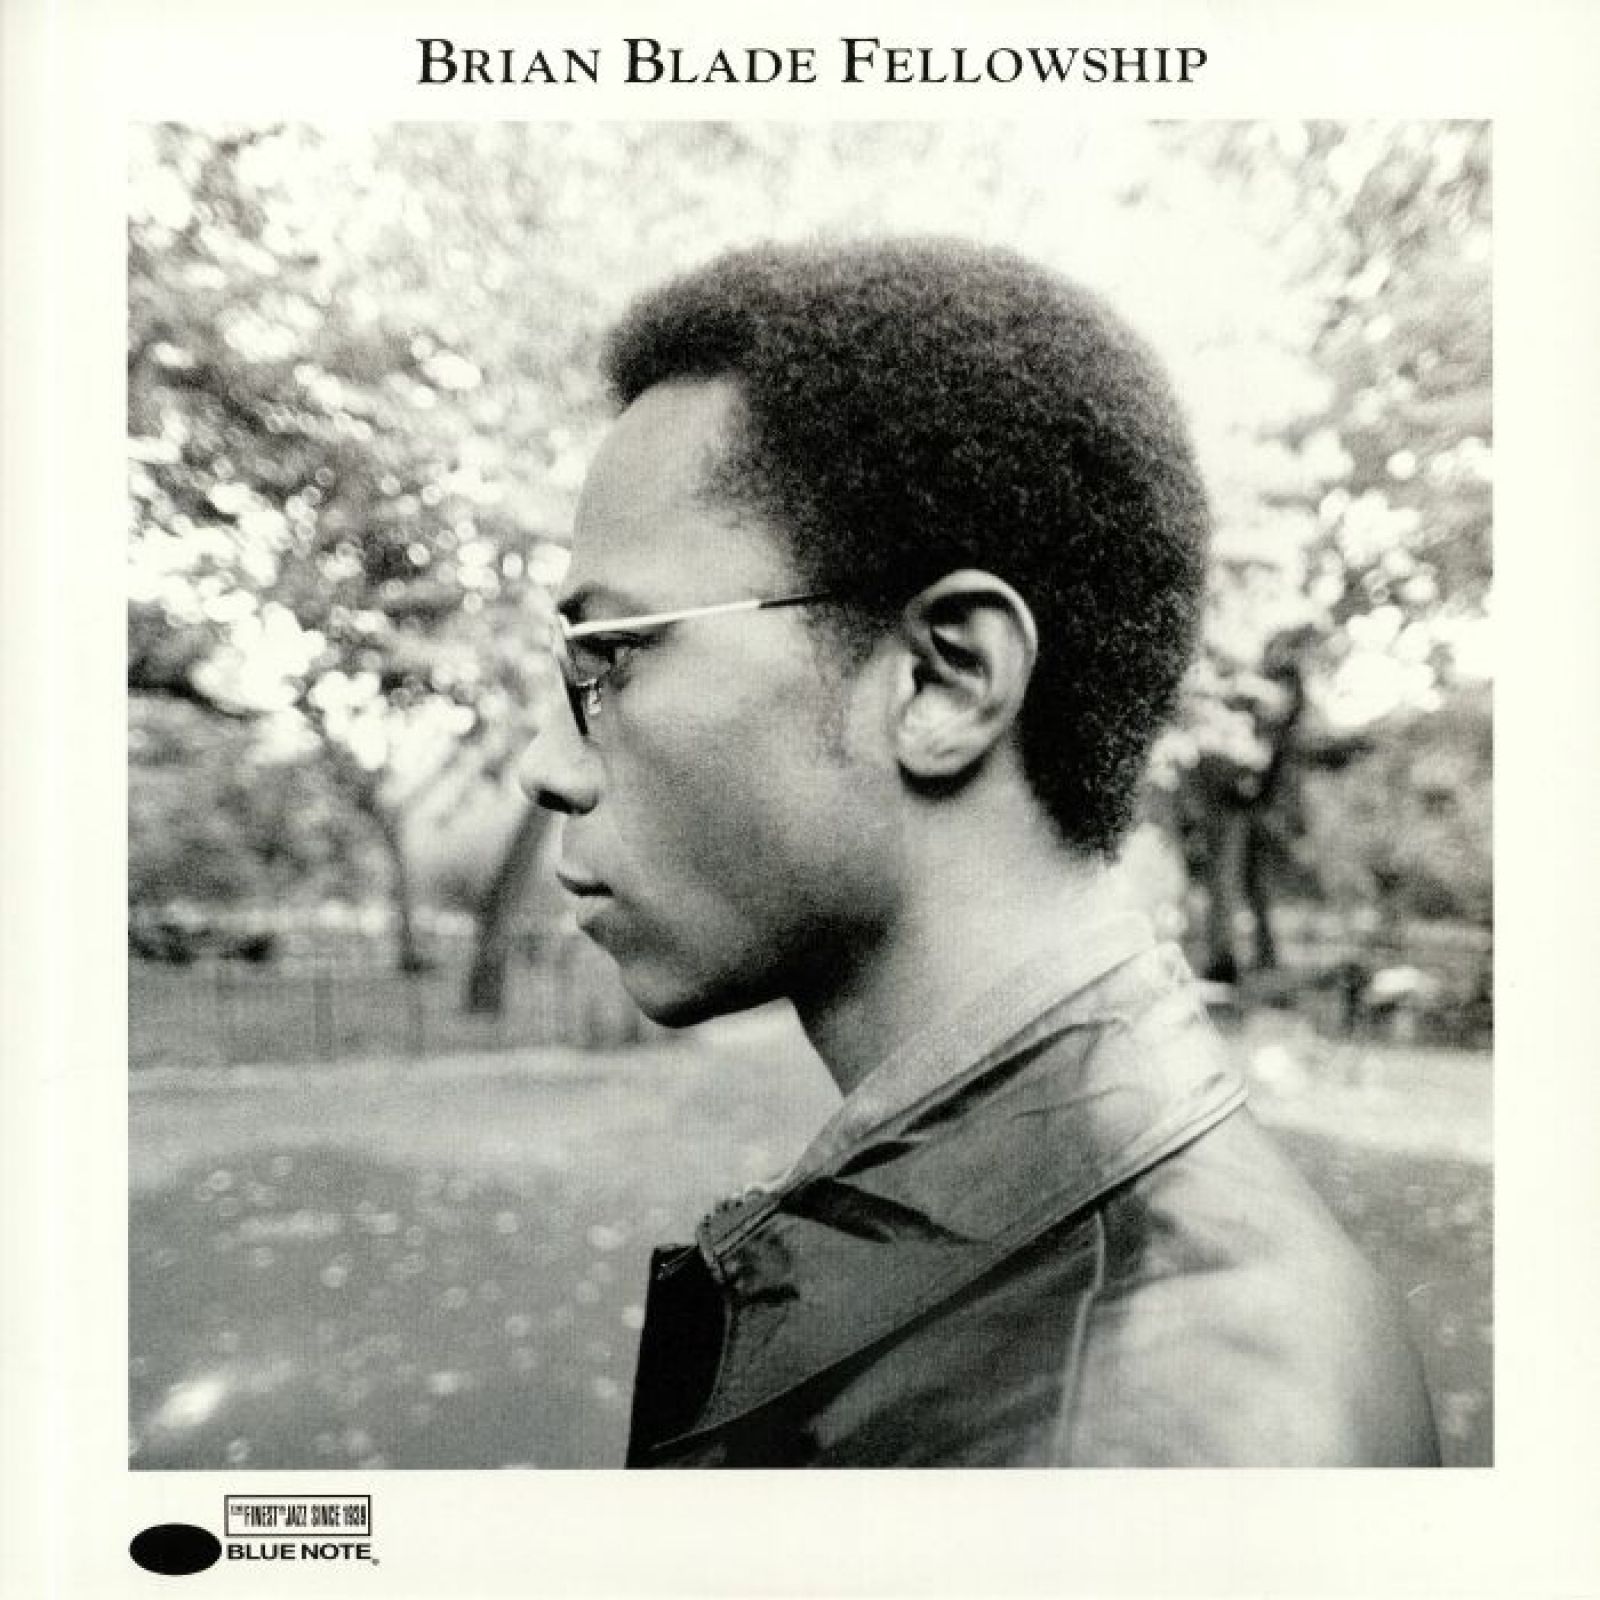 Виниловая пластинка Blade, Brian, Fellowship (0602508454806) виниловые пластинки blue note brian blade fellowship 2lp